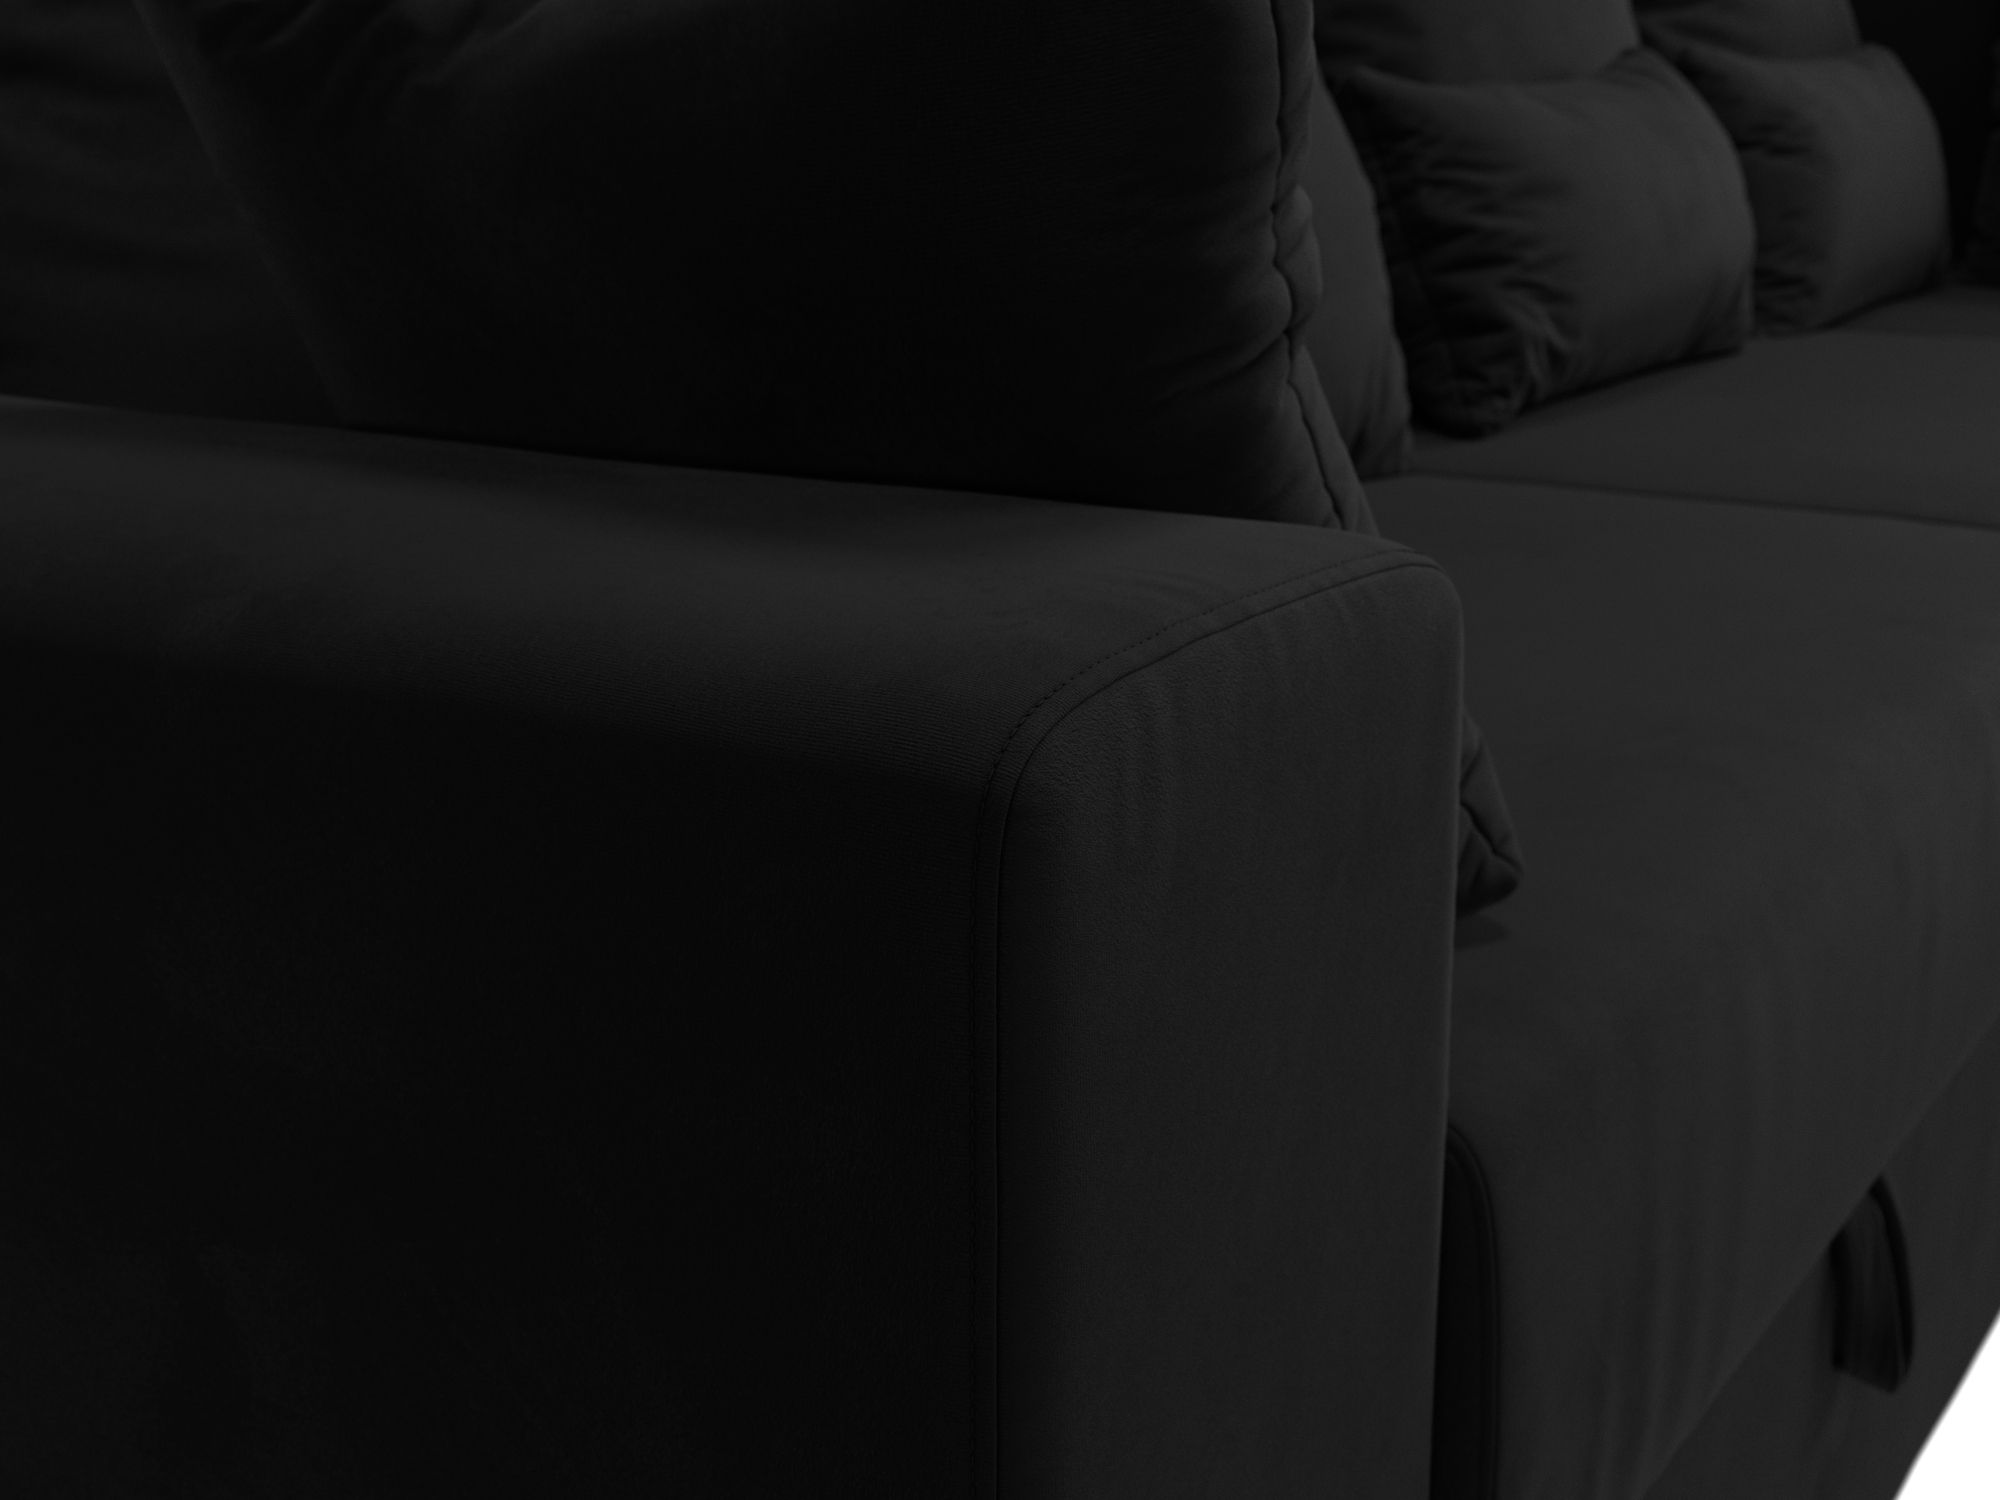 Угловой диван Майами Long правый угол (Черный)